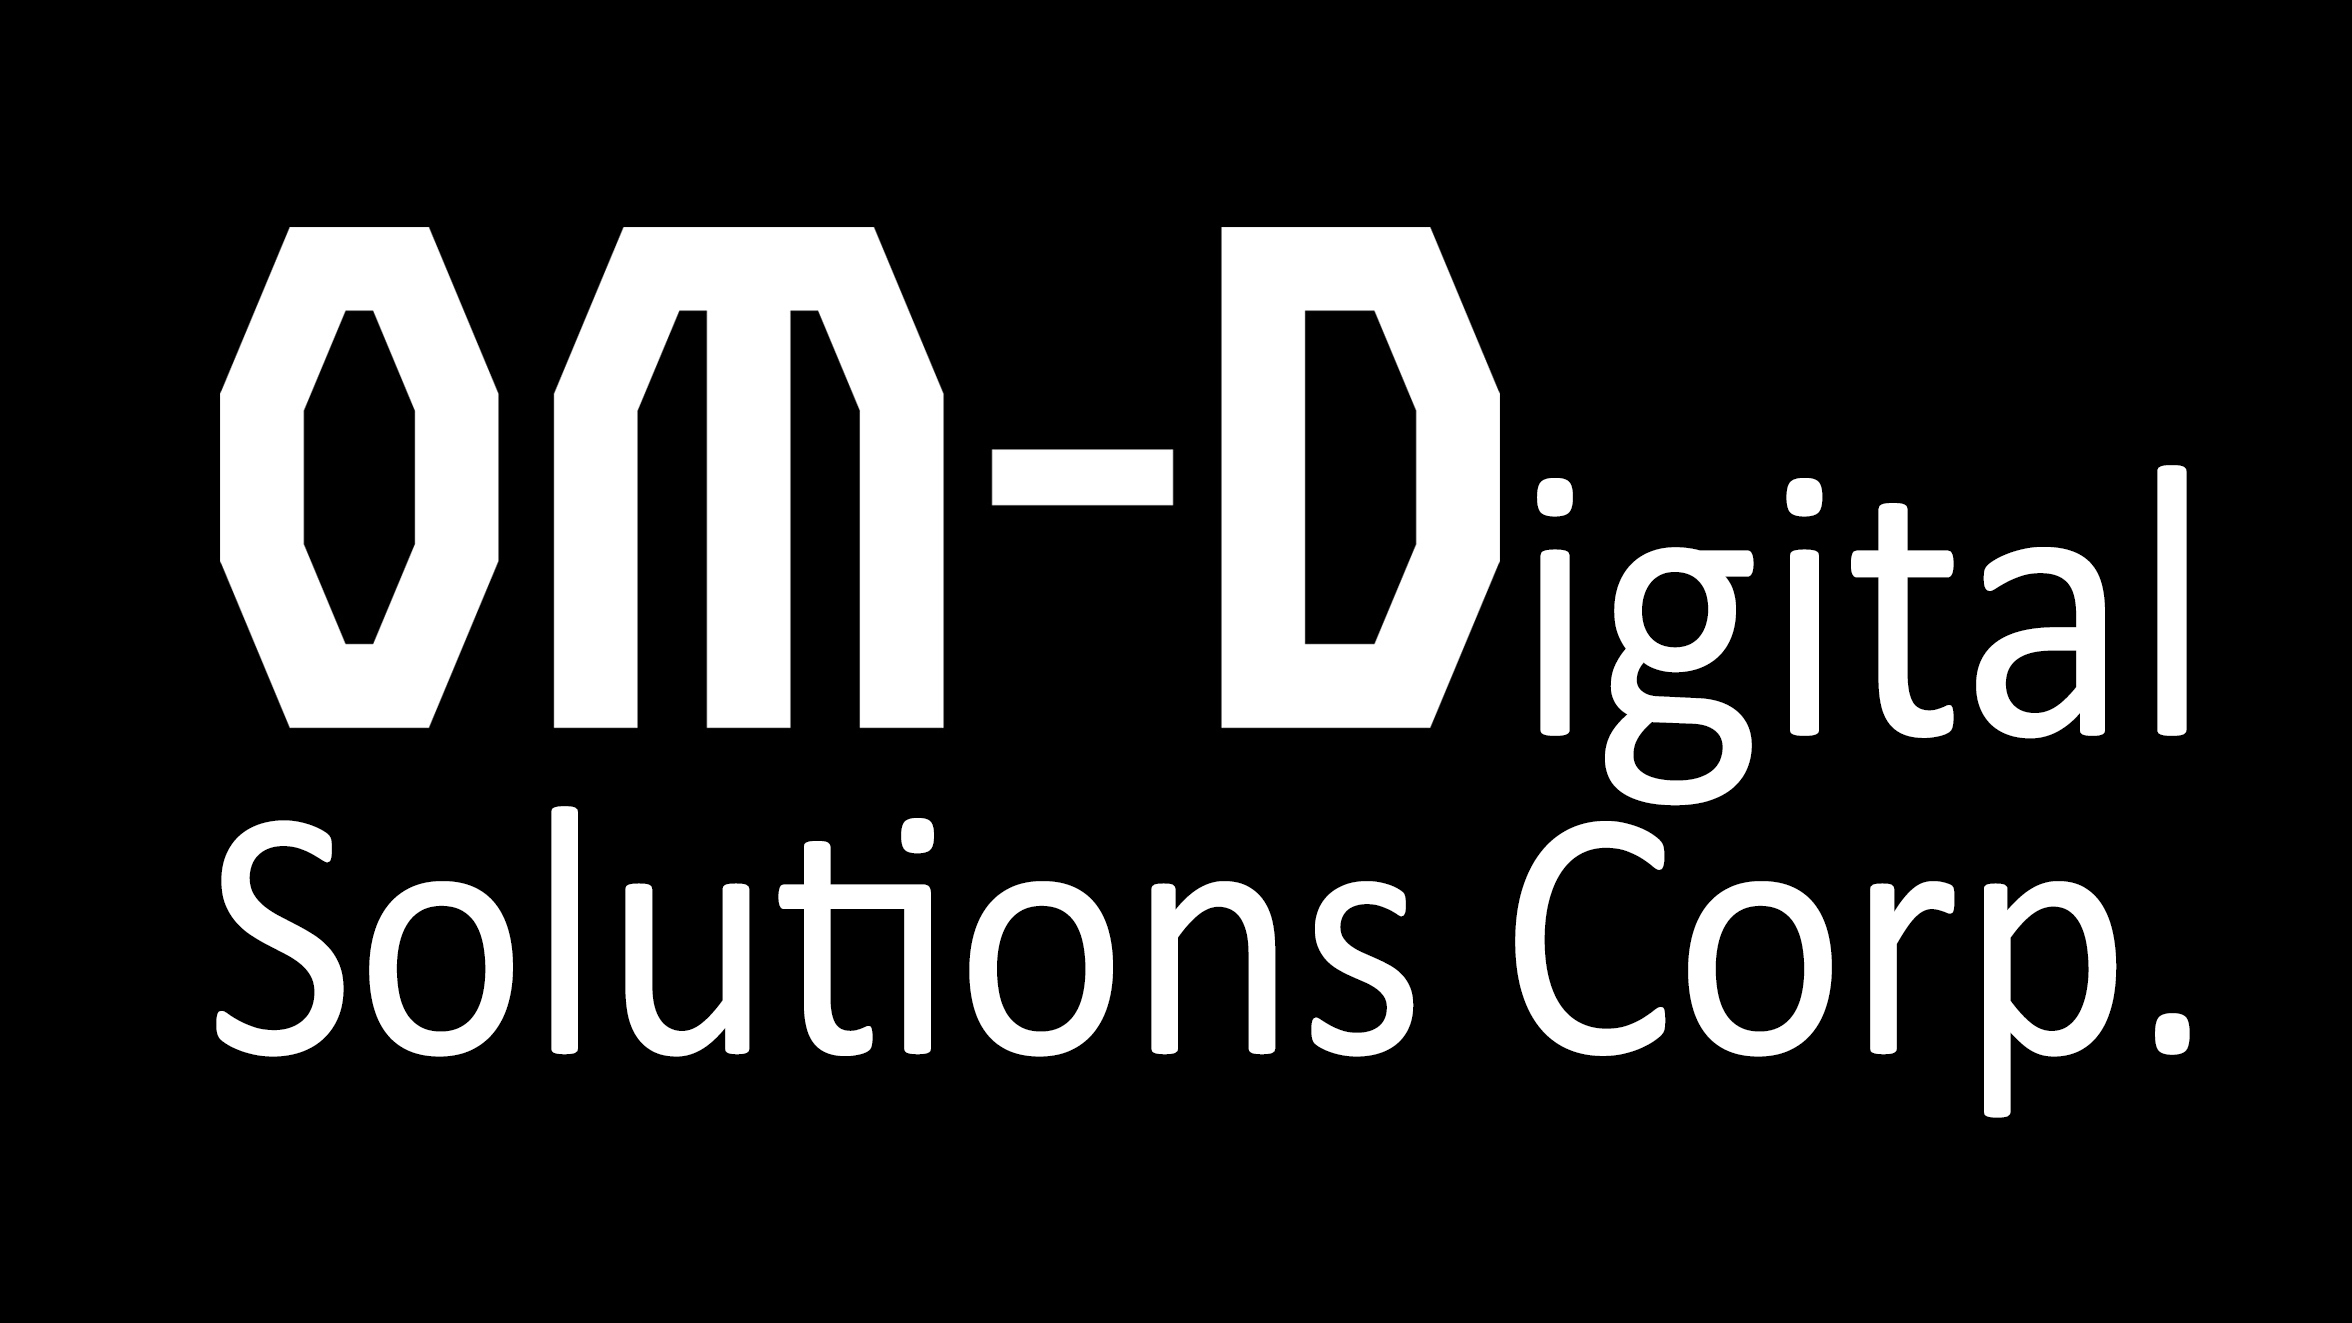 OM Digital Solutions Corporation